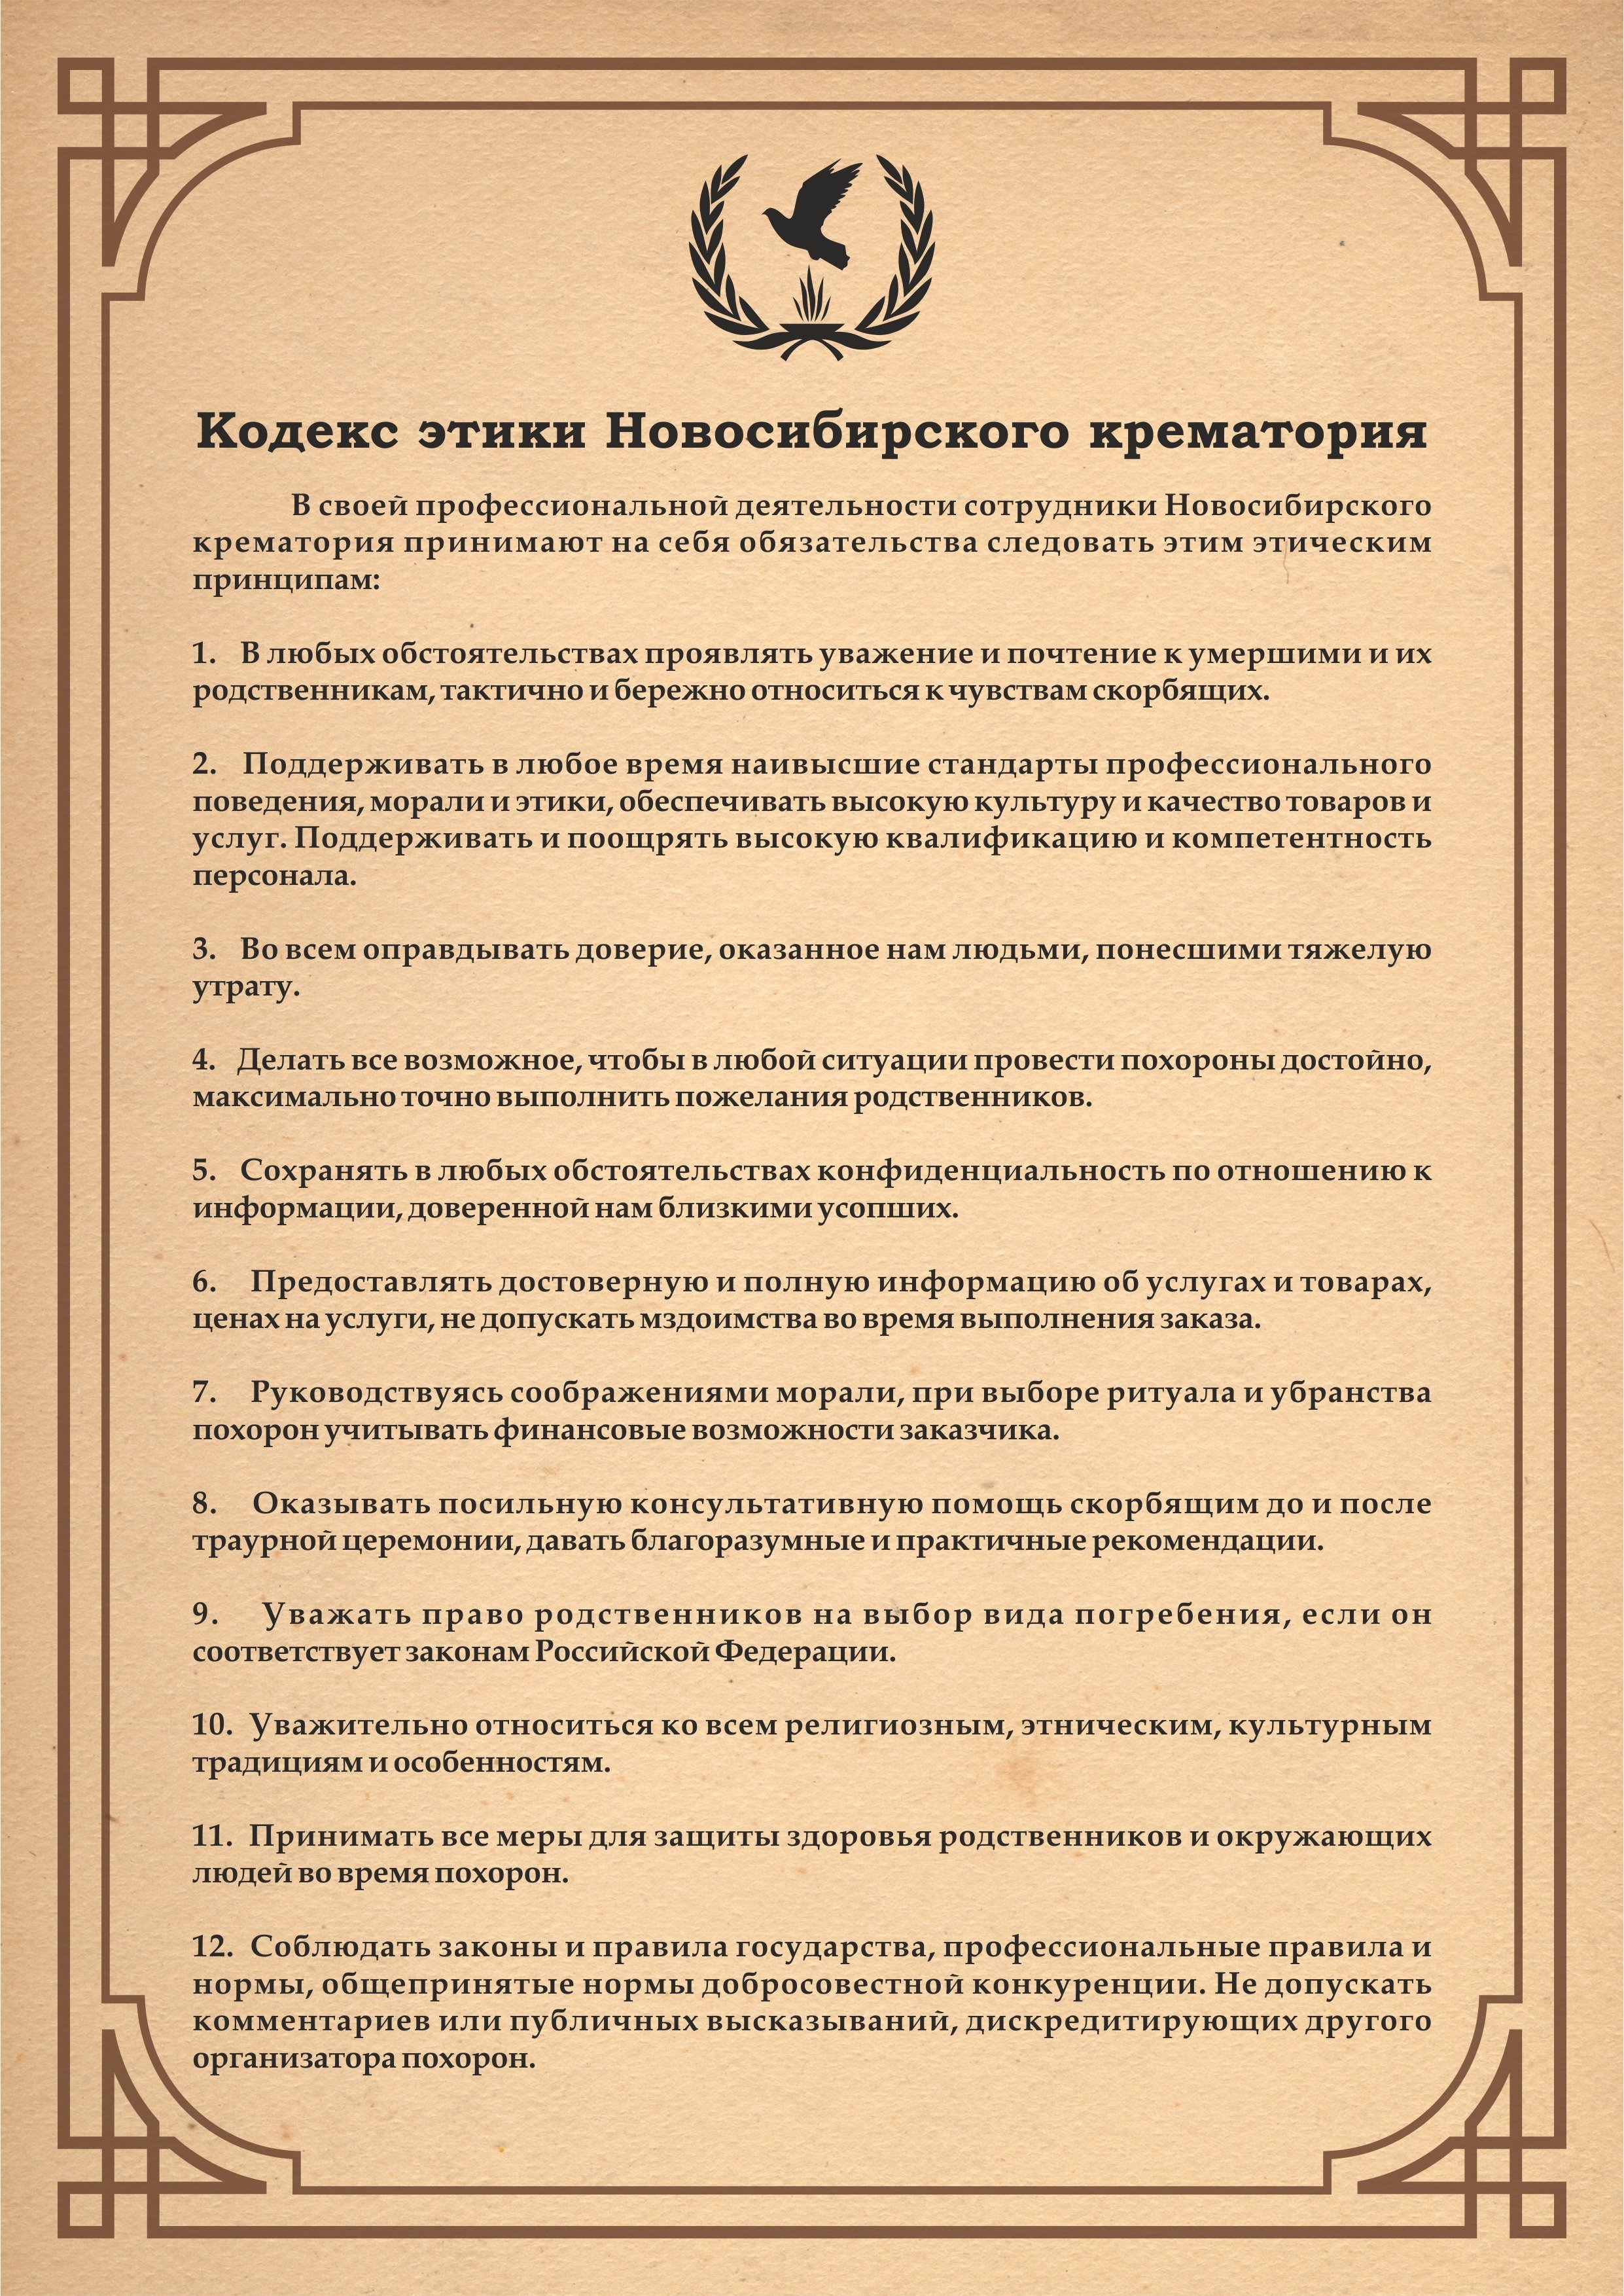 кодекс этики Новосибирского крематория